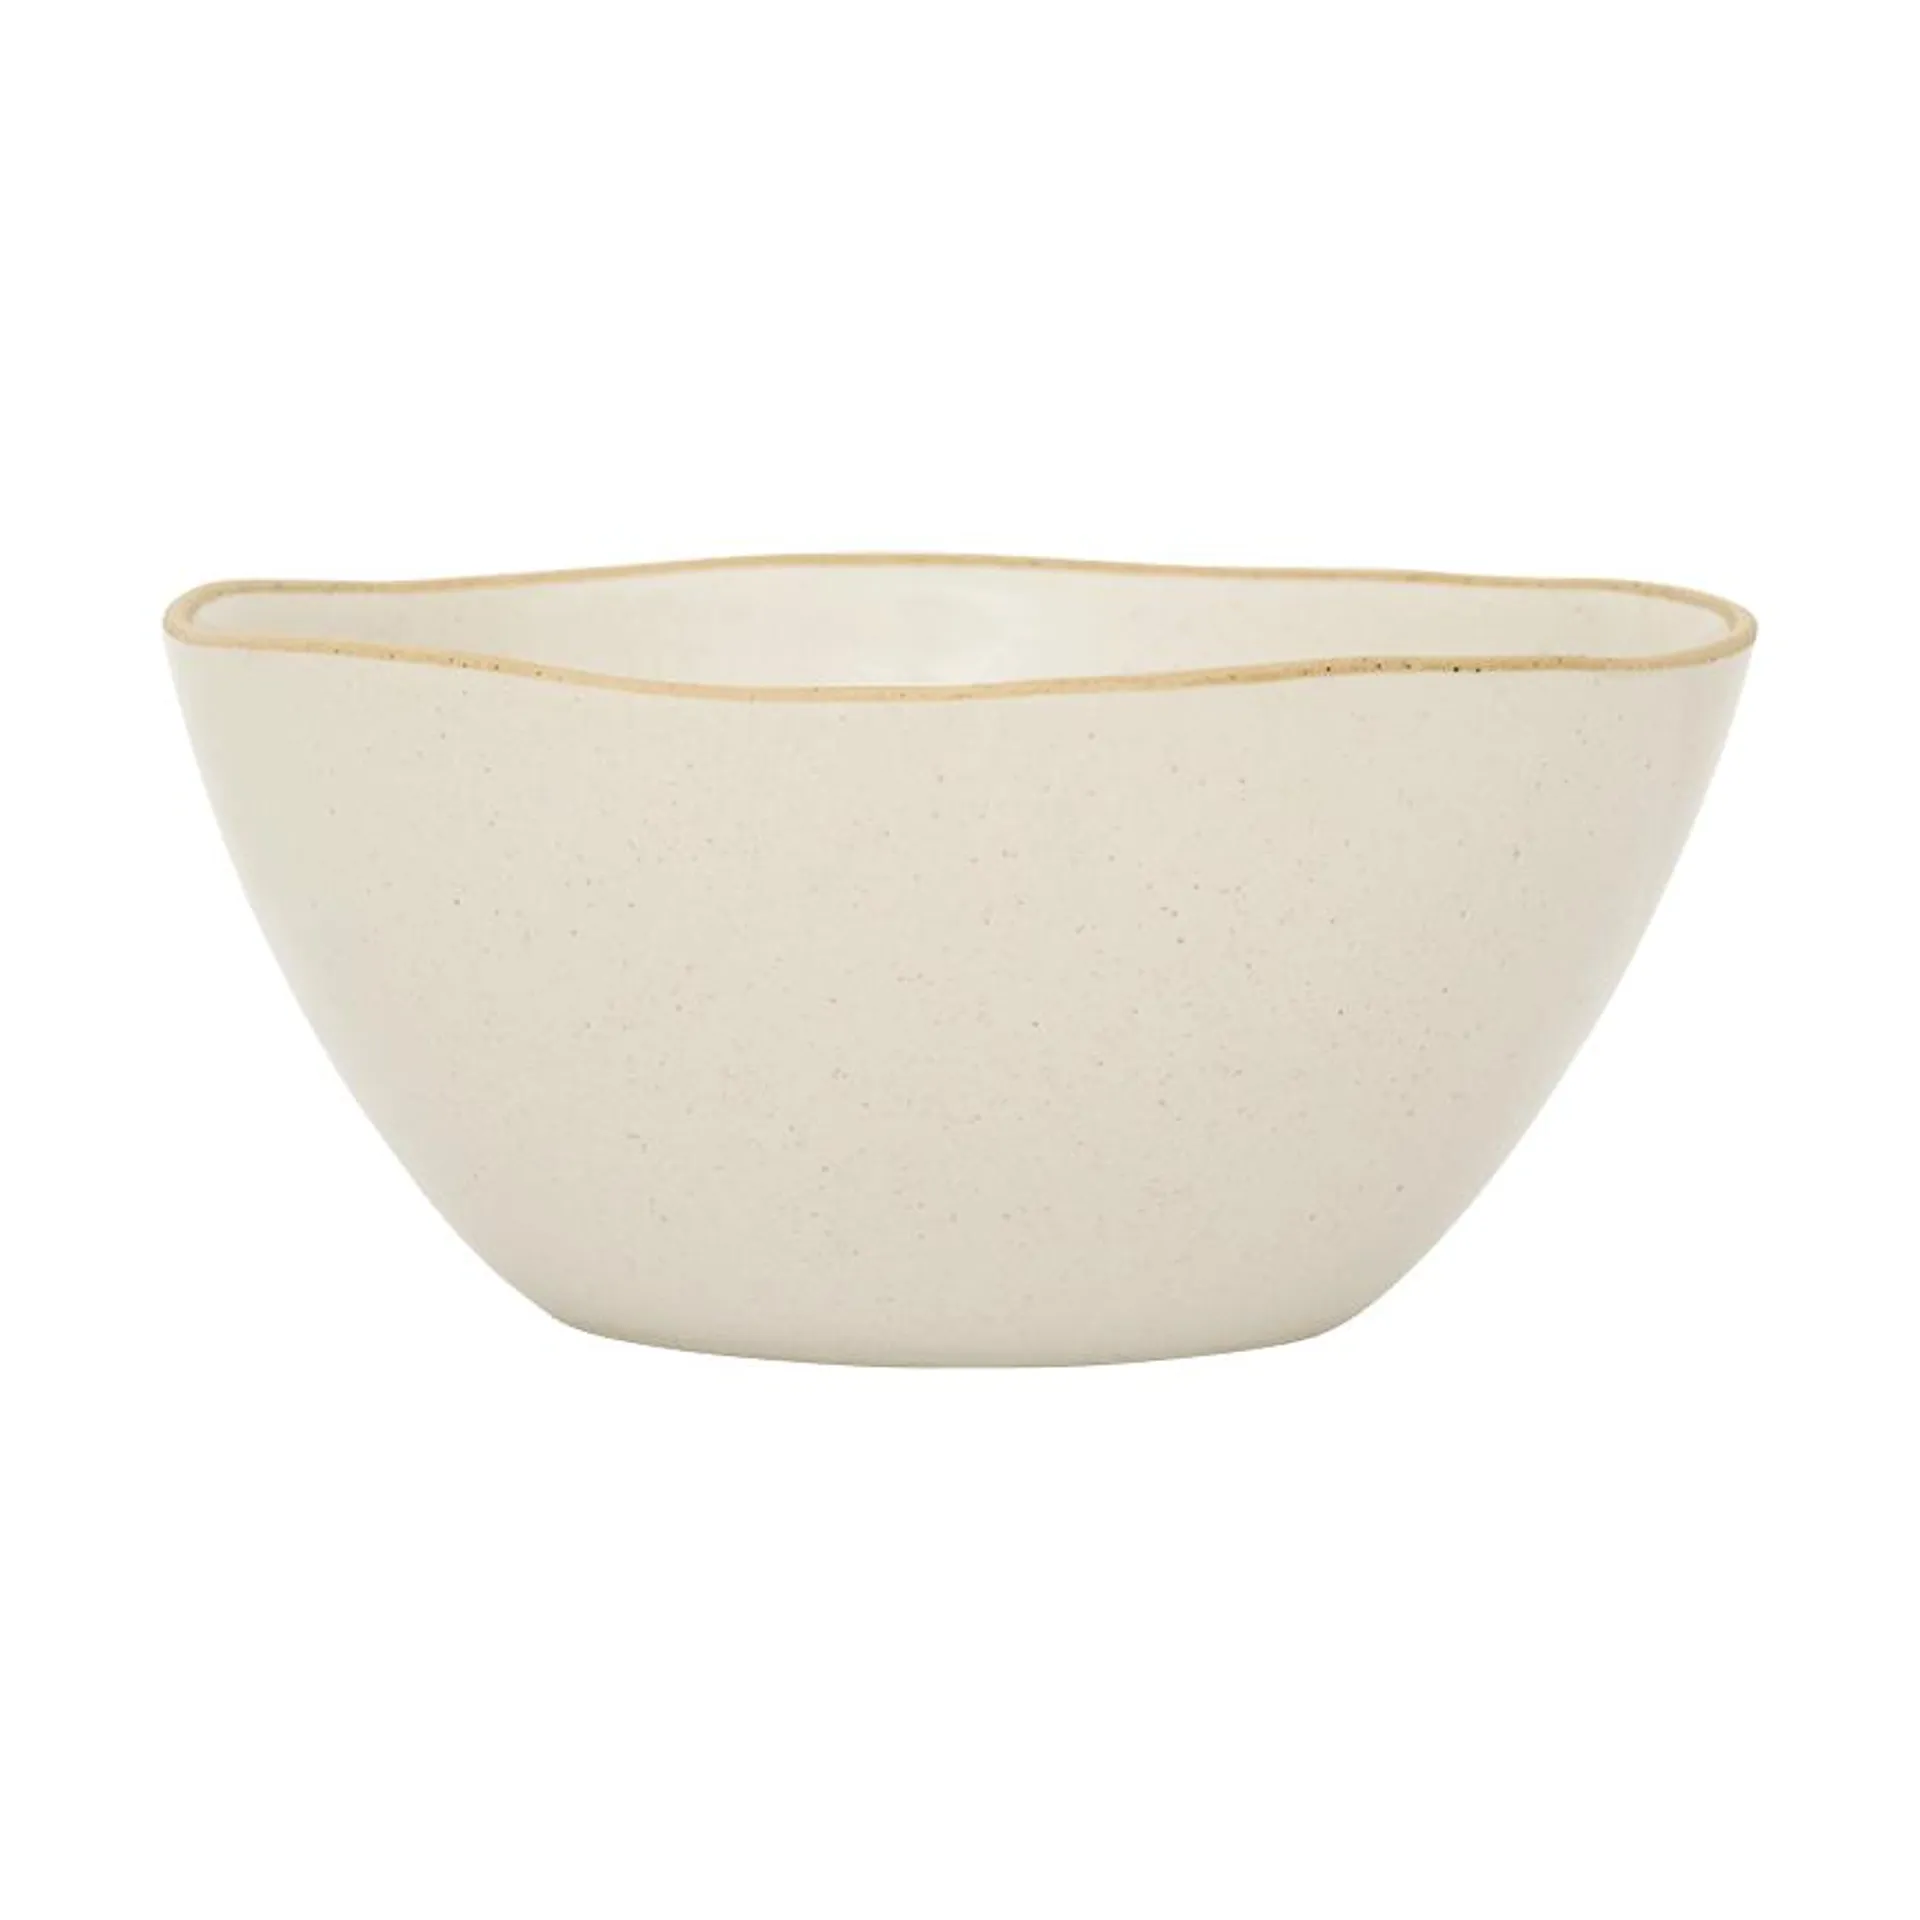 Ateljé bowl Ø15,5 cm